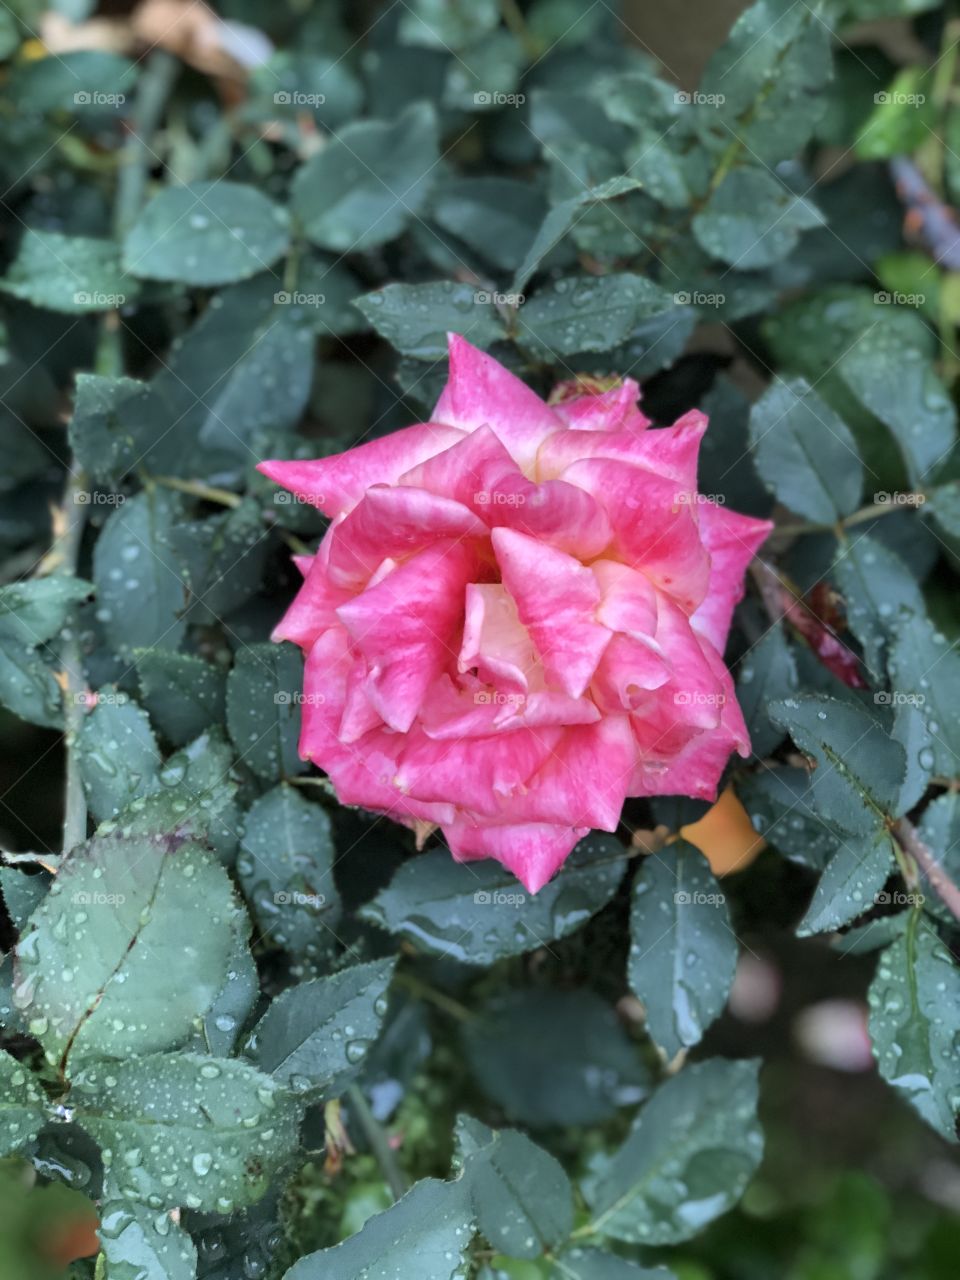 Rose(Pink)